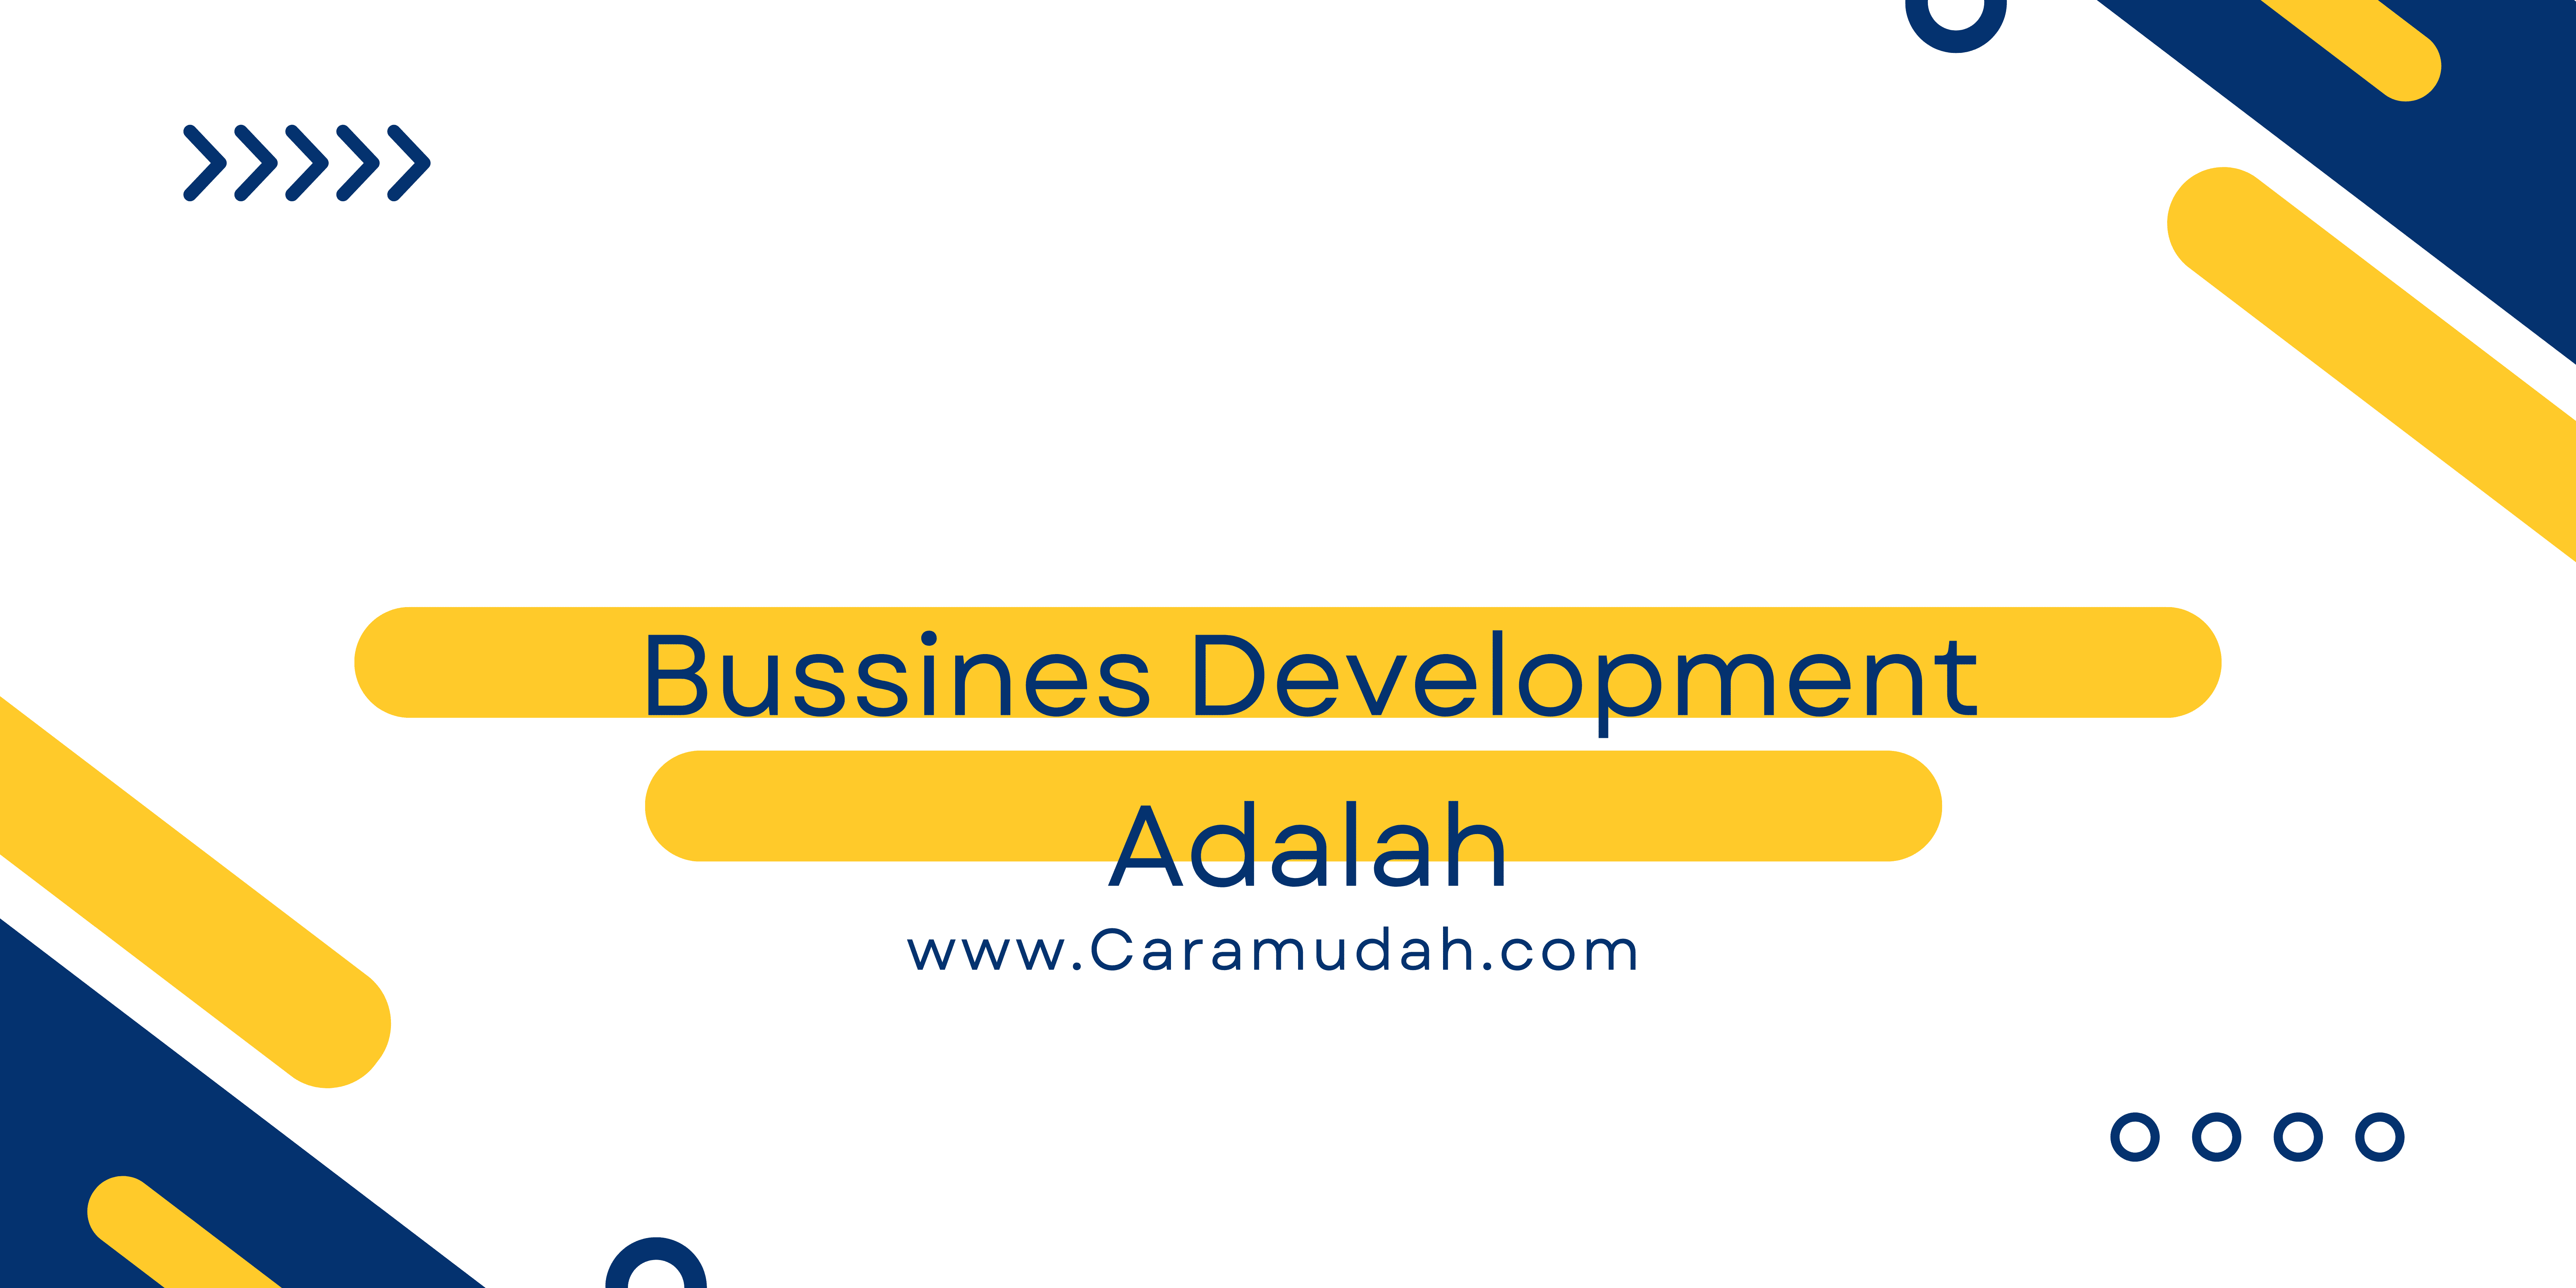 business development adalah